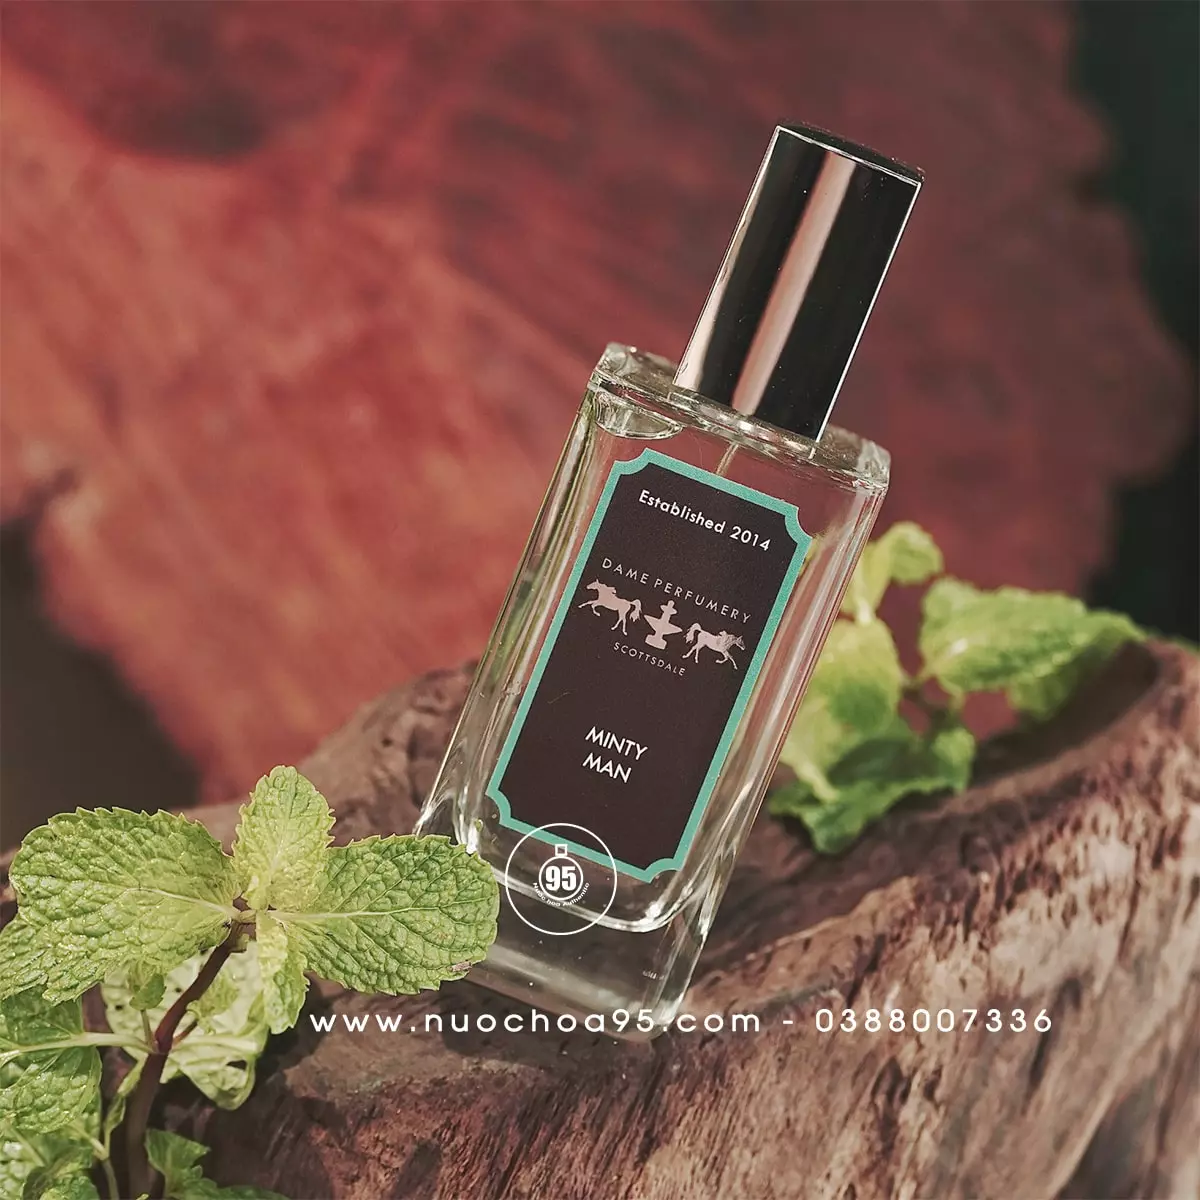 Nước hoa Dame Perfumery Minty Man - Ảnh 1